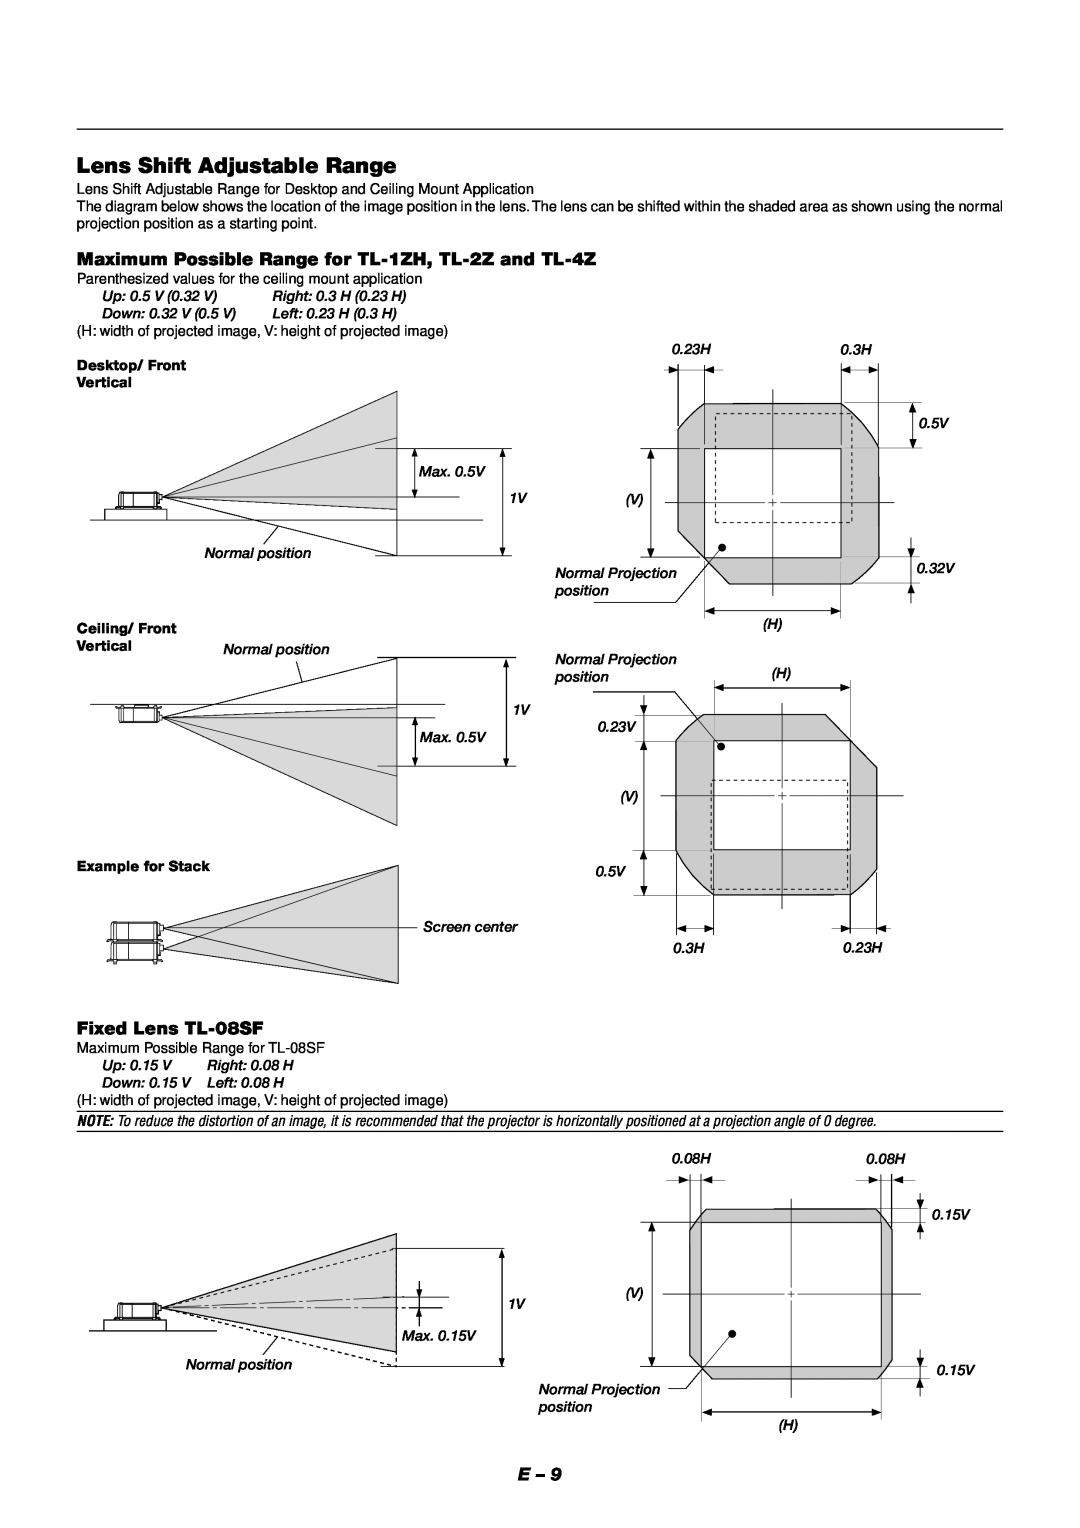 NEC XT9000 Lens Shift Adjustable Range, Maximum Possible Range for TL-1ZH, TL-2Z and TL-4Z, Fixed Lens TL-08SF, Vertical 